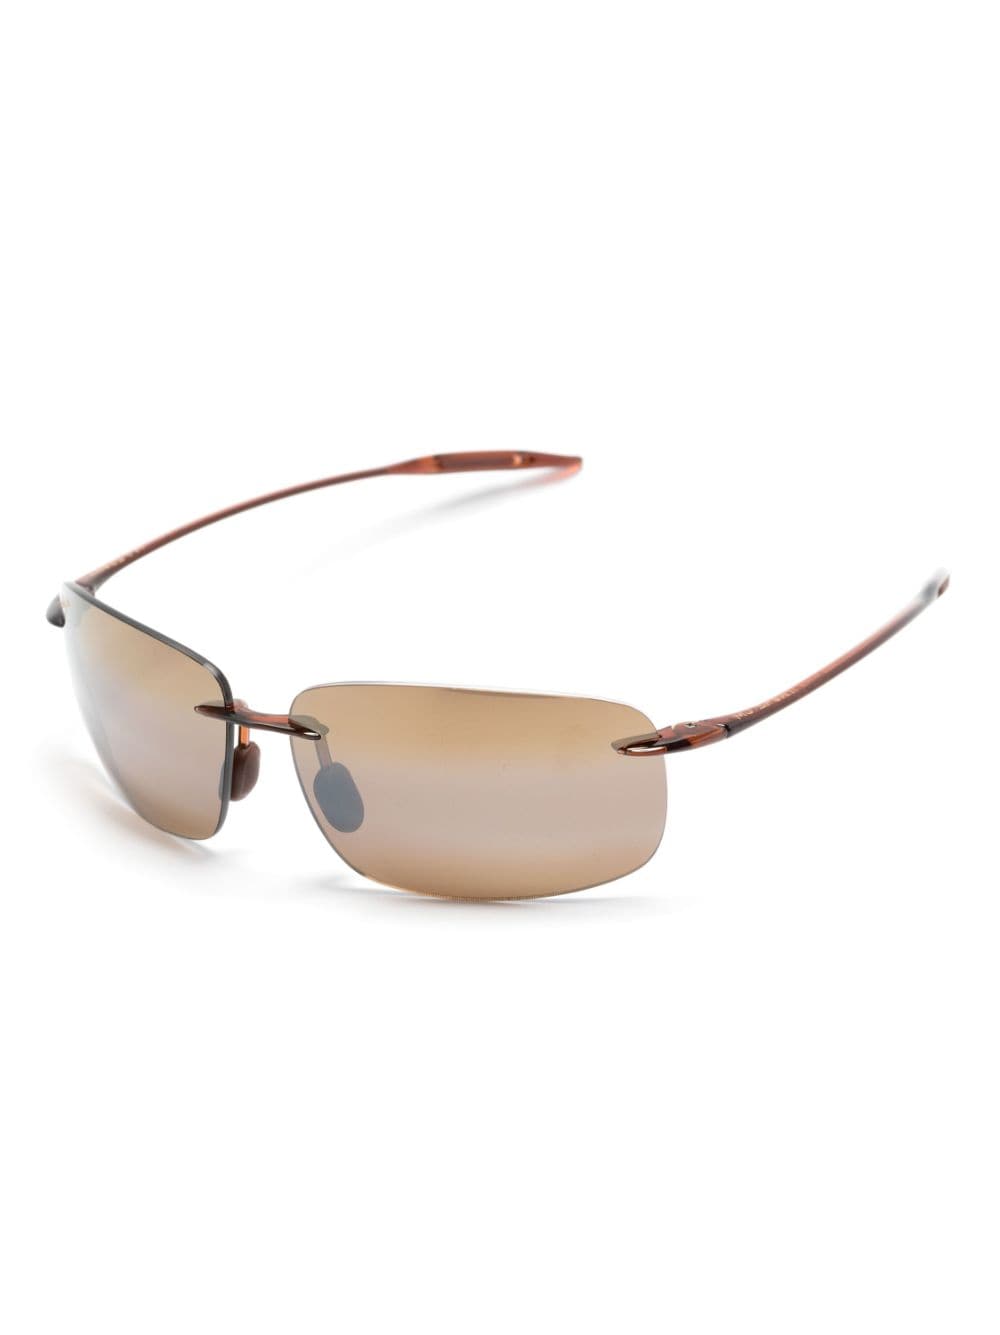 Maui Jim Breakwall frameless sunglasses - Bruin